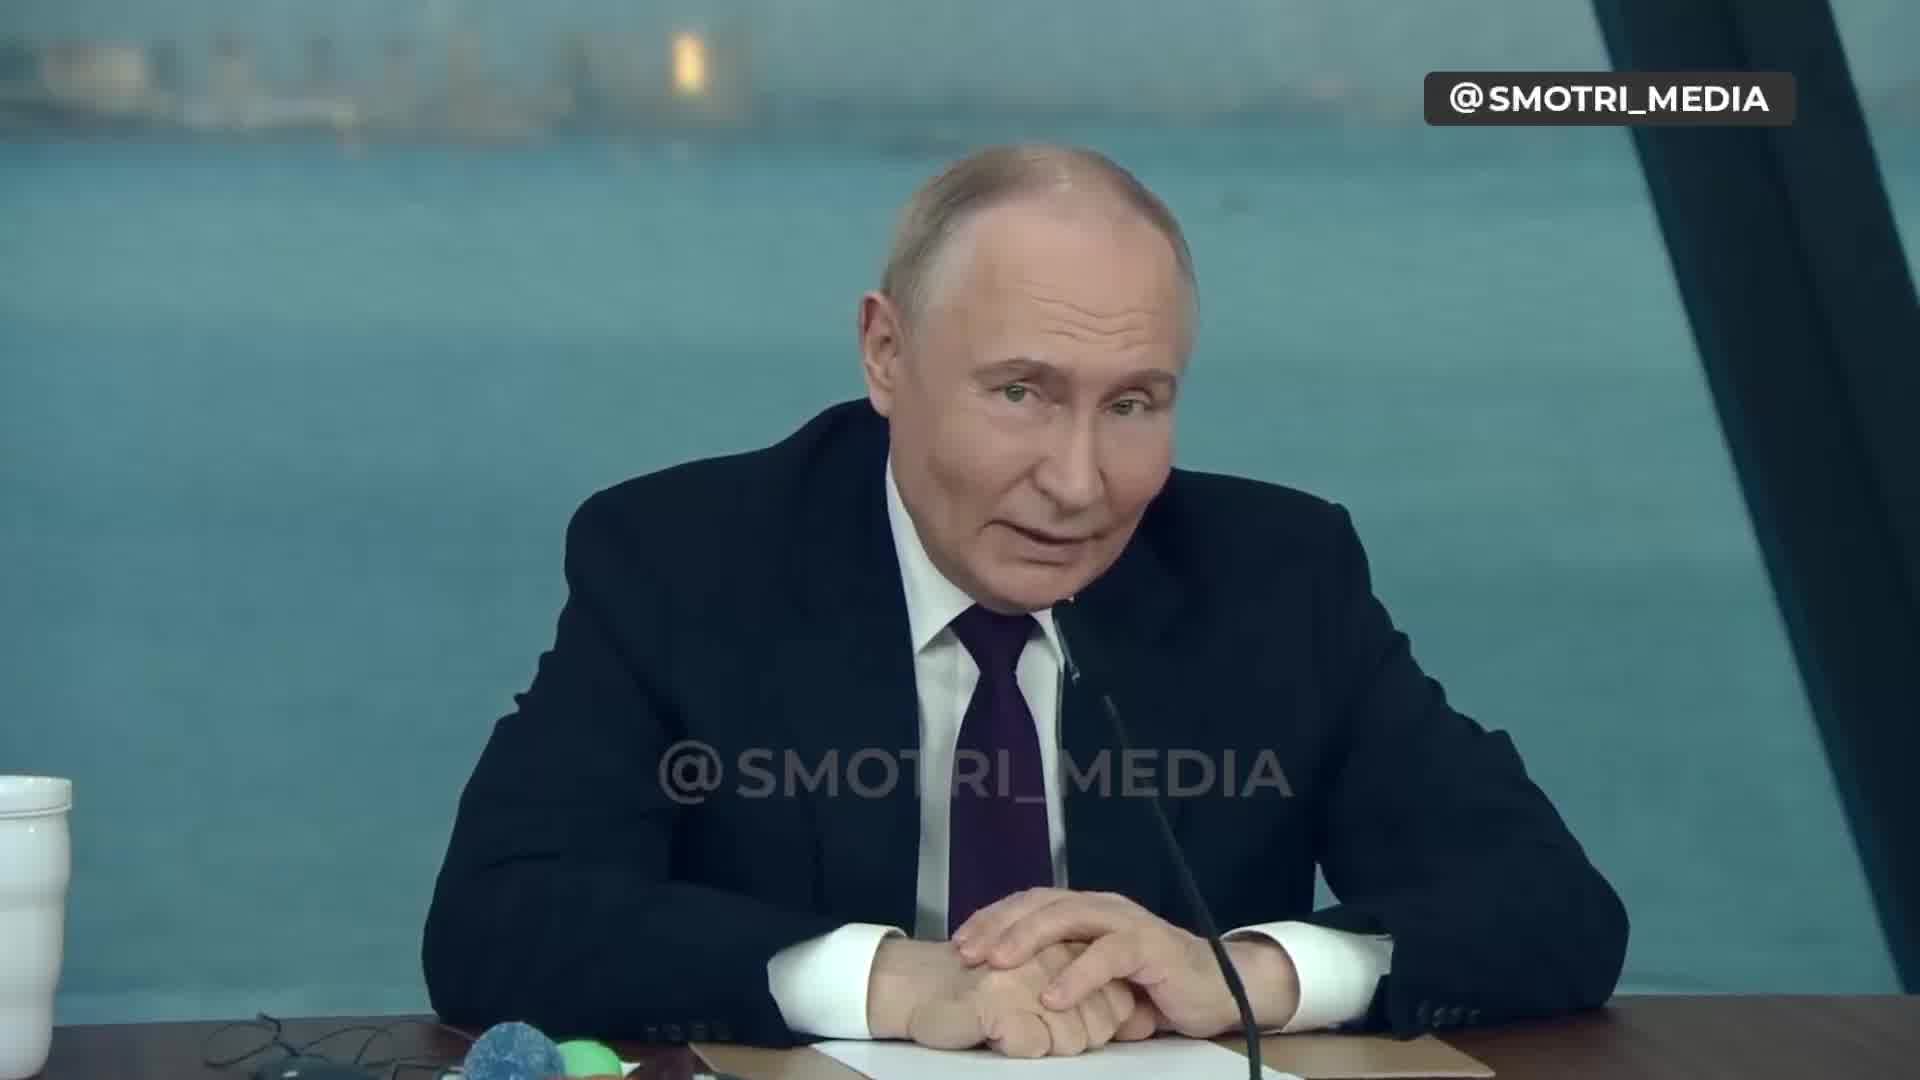 Putin říká, že Rusko zvažuje dodat zbraně třetím hráčům v jiných částech světa, kteří zaútočí na země, které dodaly zbraně Ukrajině